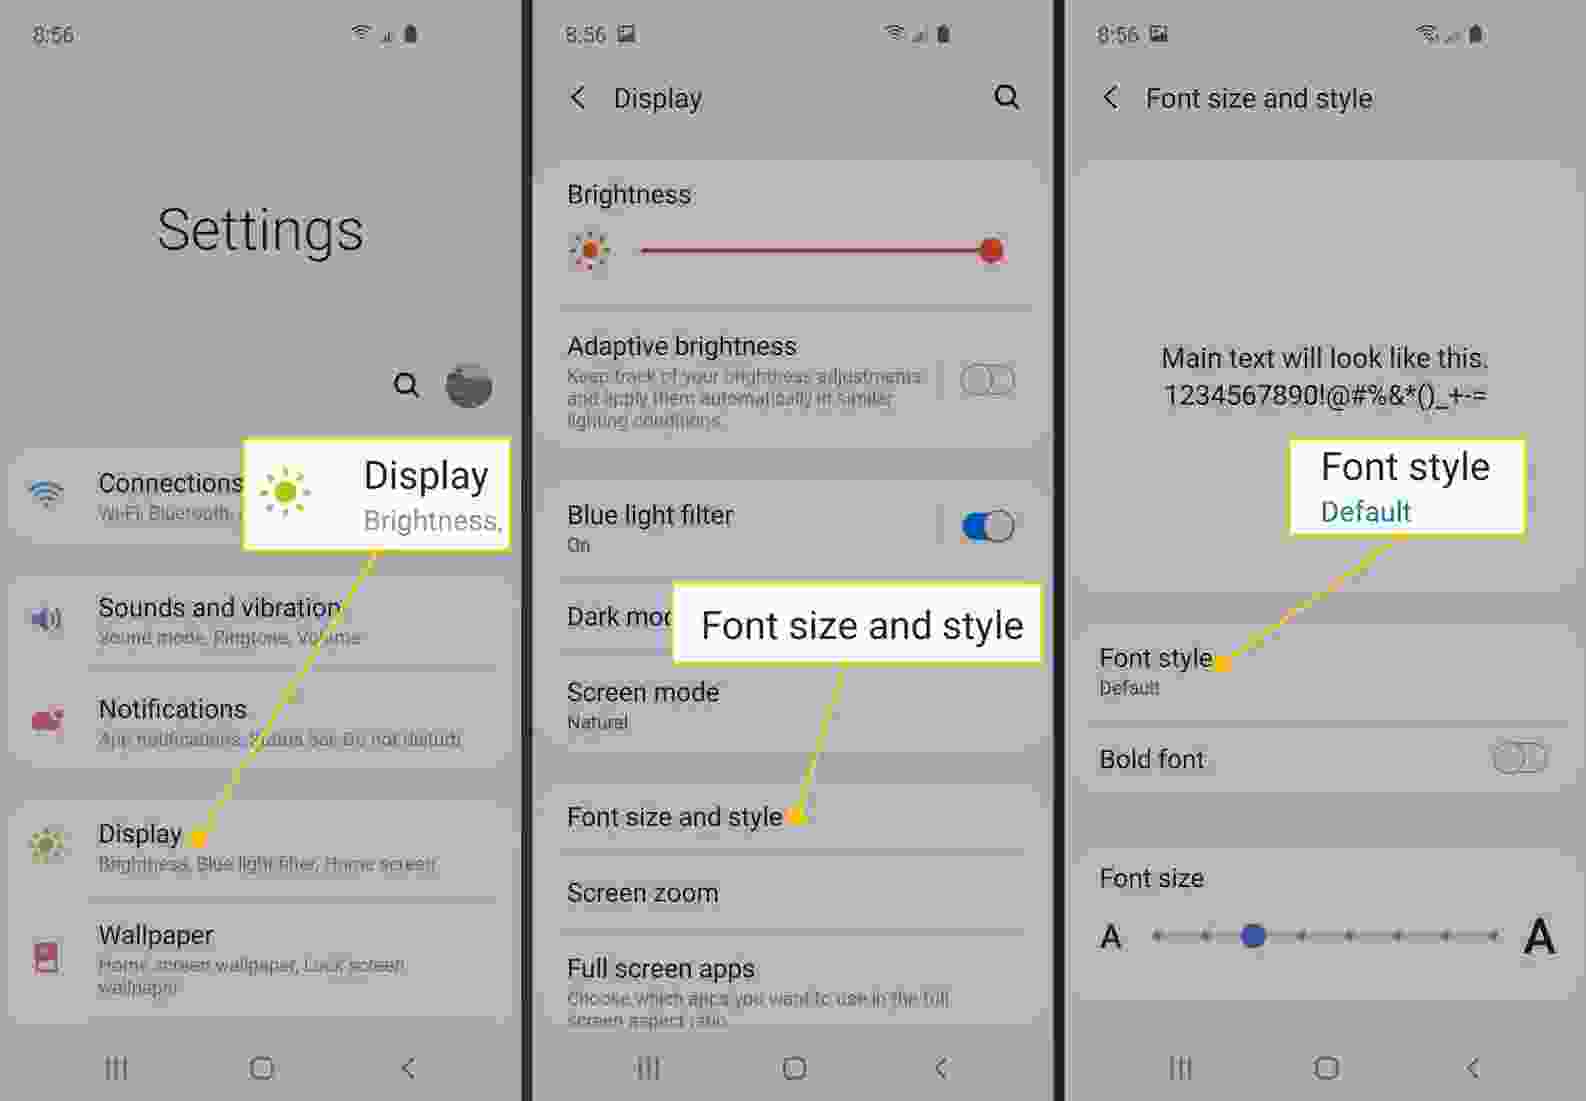 Thay đổi font chữ trên Android đang là trào lưu của giới trẻ hiện nay. Tham gia cùng Samsung để có trải nghiệm thật trọn vẹn. Với nhiều font chữ mới cập nhật, người dùng có thể tùy biến giao diện điện thoại cho phù hợp với mục đích sử dụng của mình. Hãy xem hình ảnh để nhận ngay sự cập nhật mới nhất của Samsung.